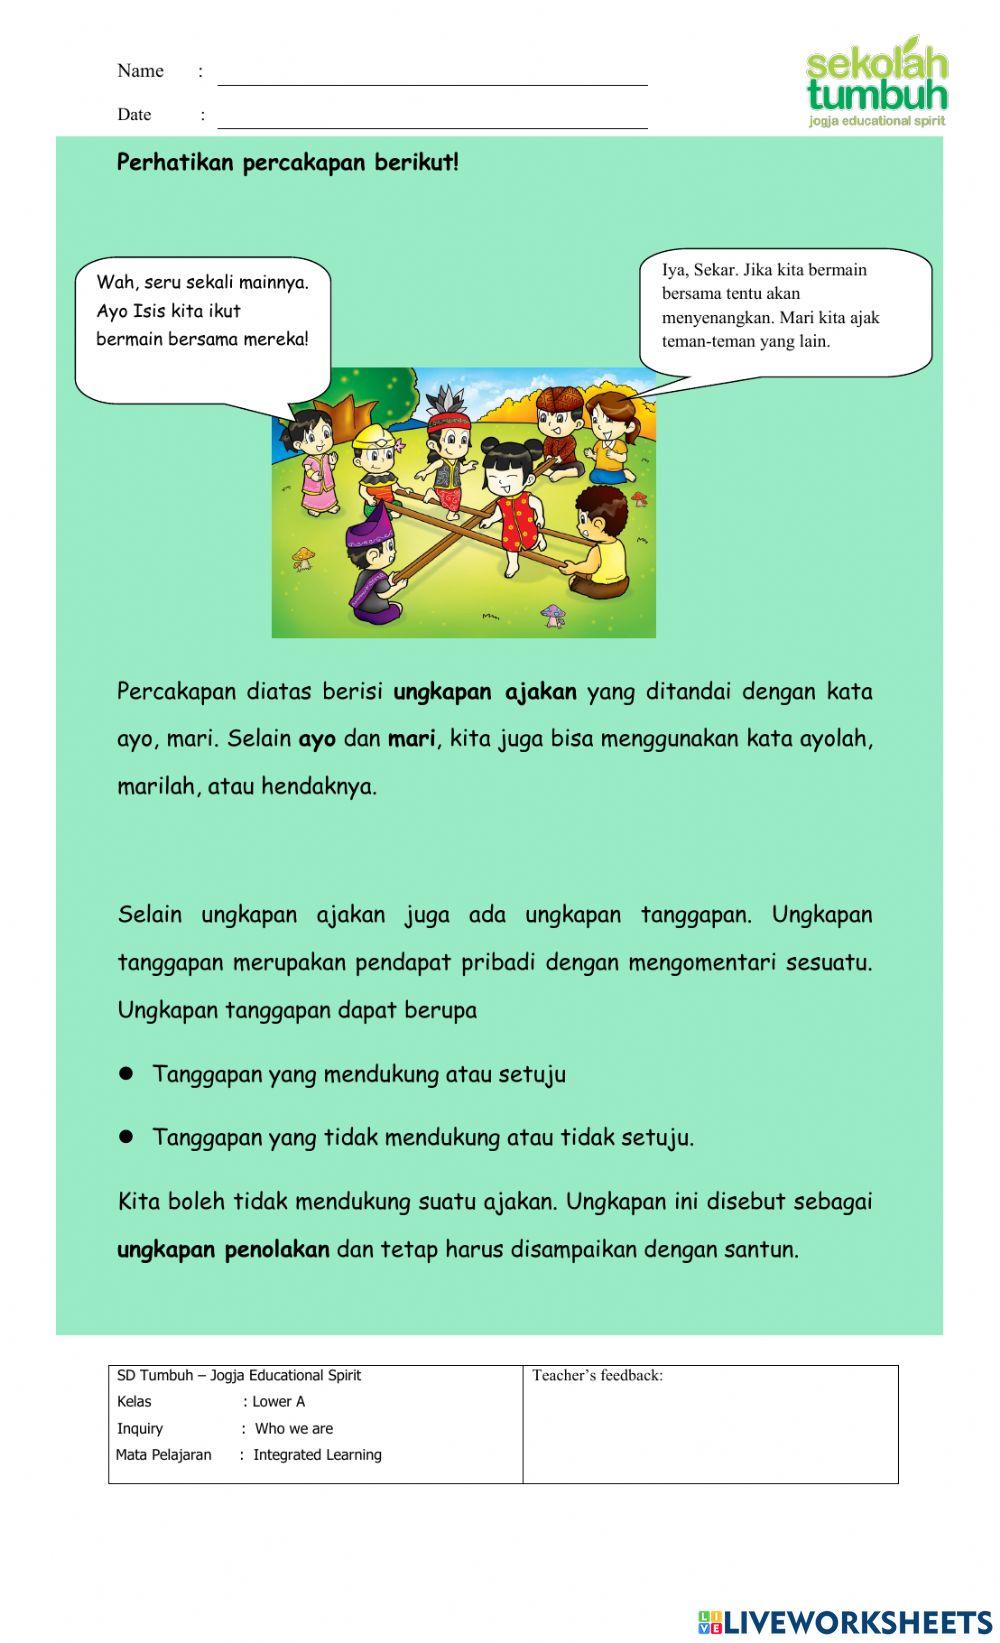 IL-Memahami kalimat ungkapan dan keberagaman Indonesia-Essay